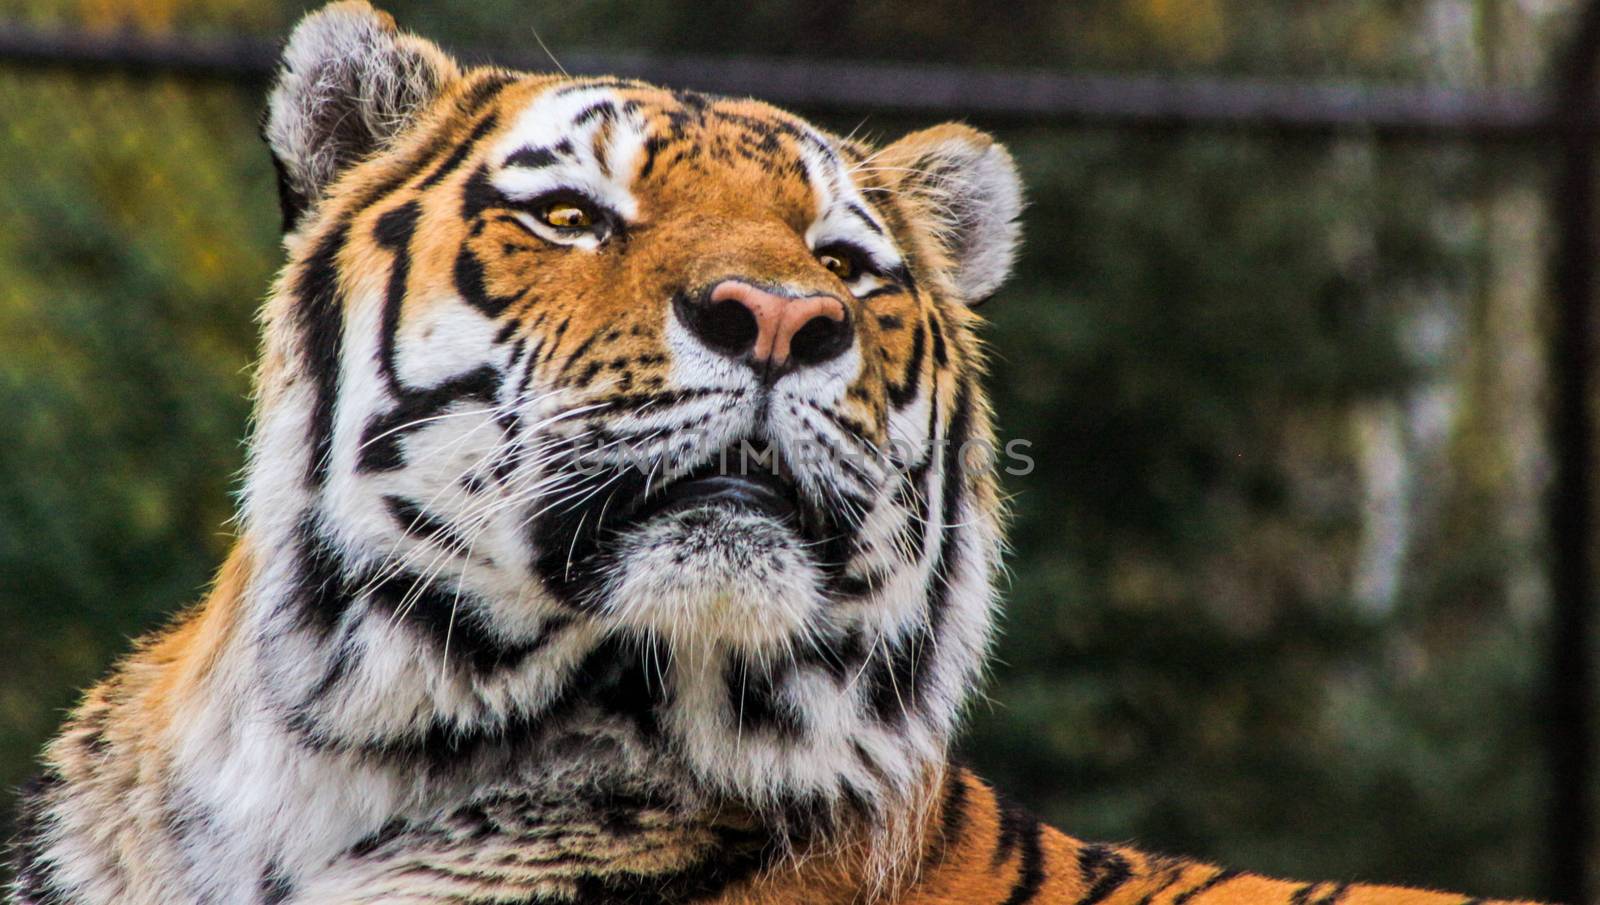 Beautiful amur tiger portrait close up